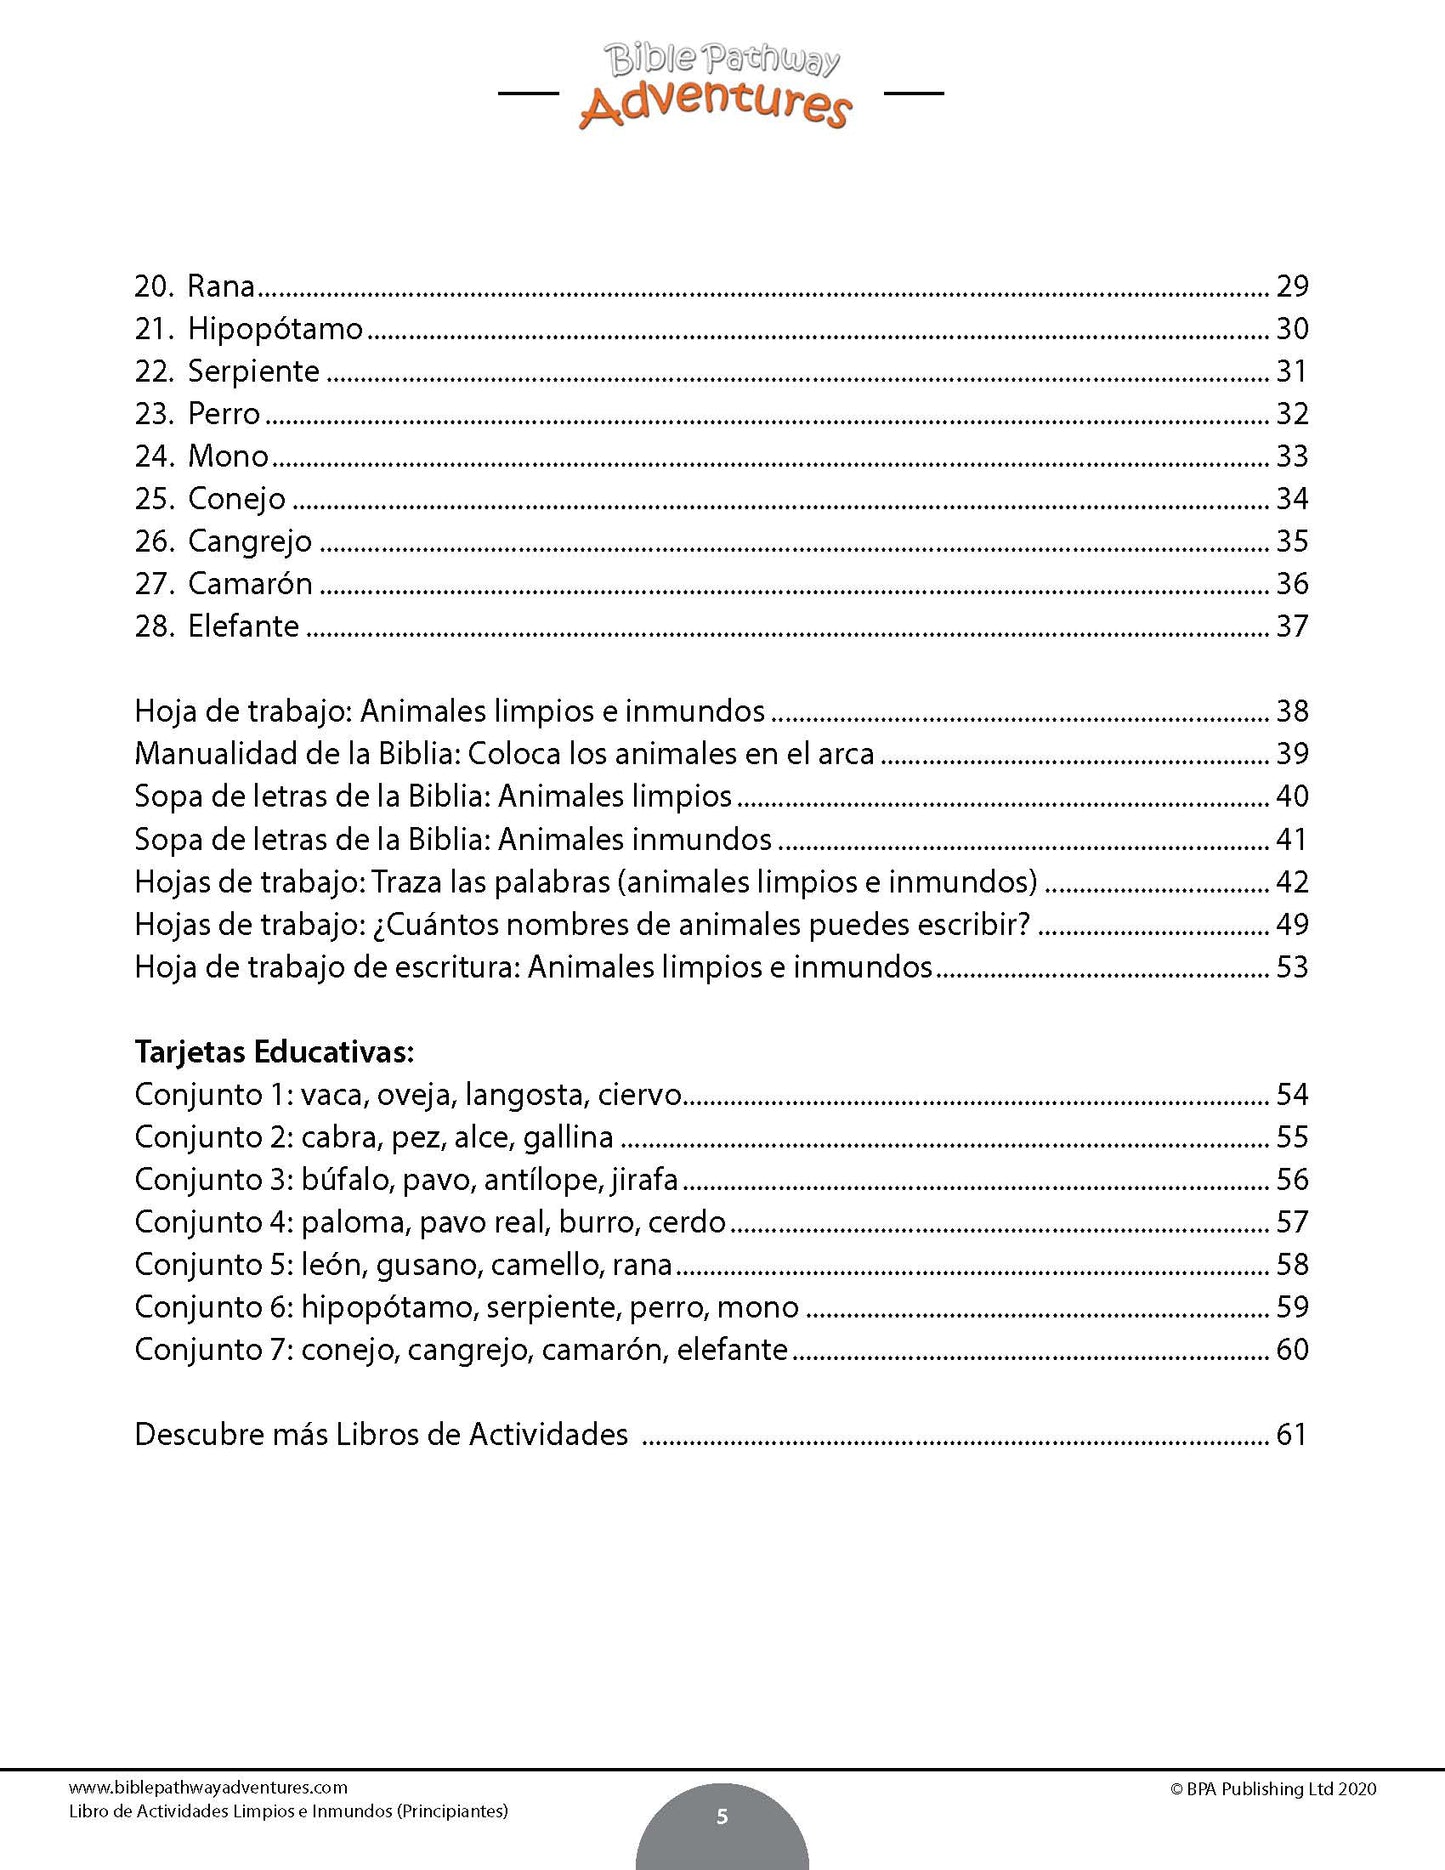 Libro de actividades limpios e inmundos para principiantes (PDF)